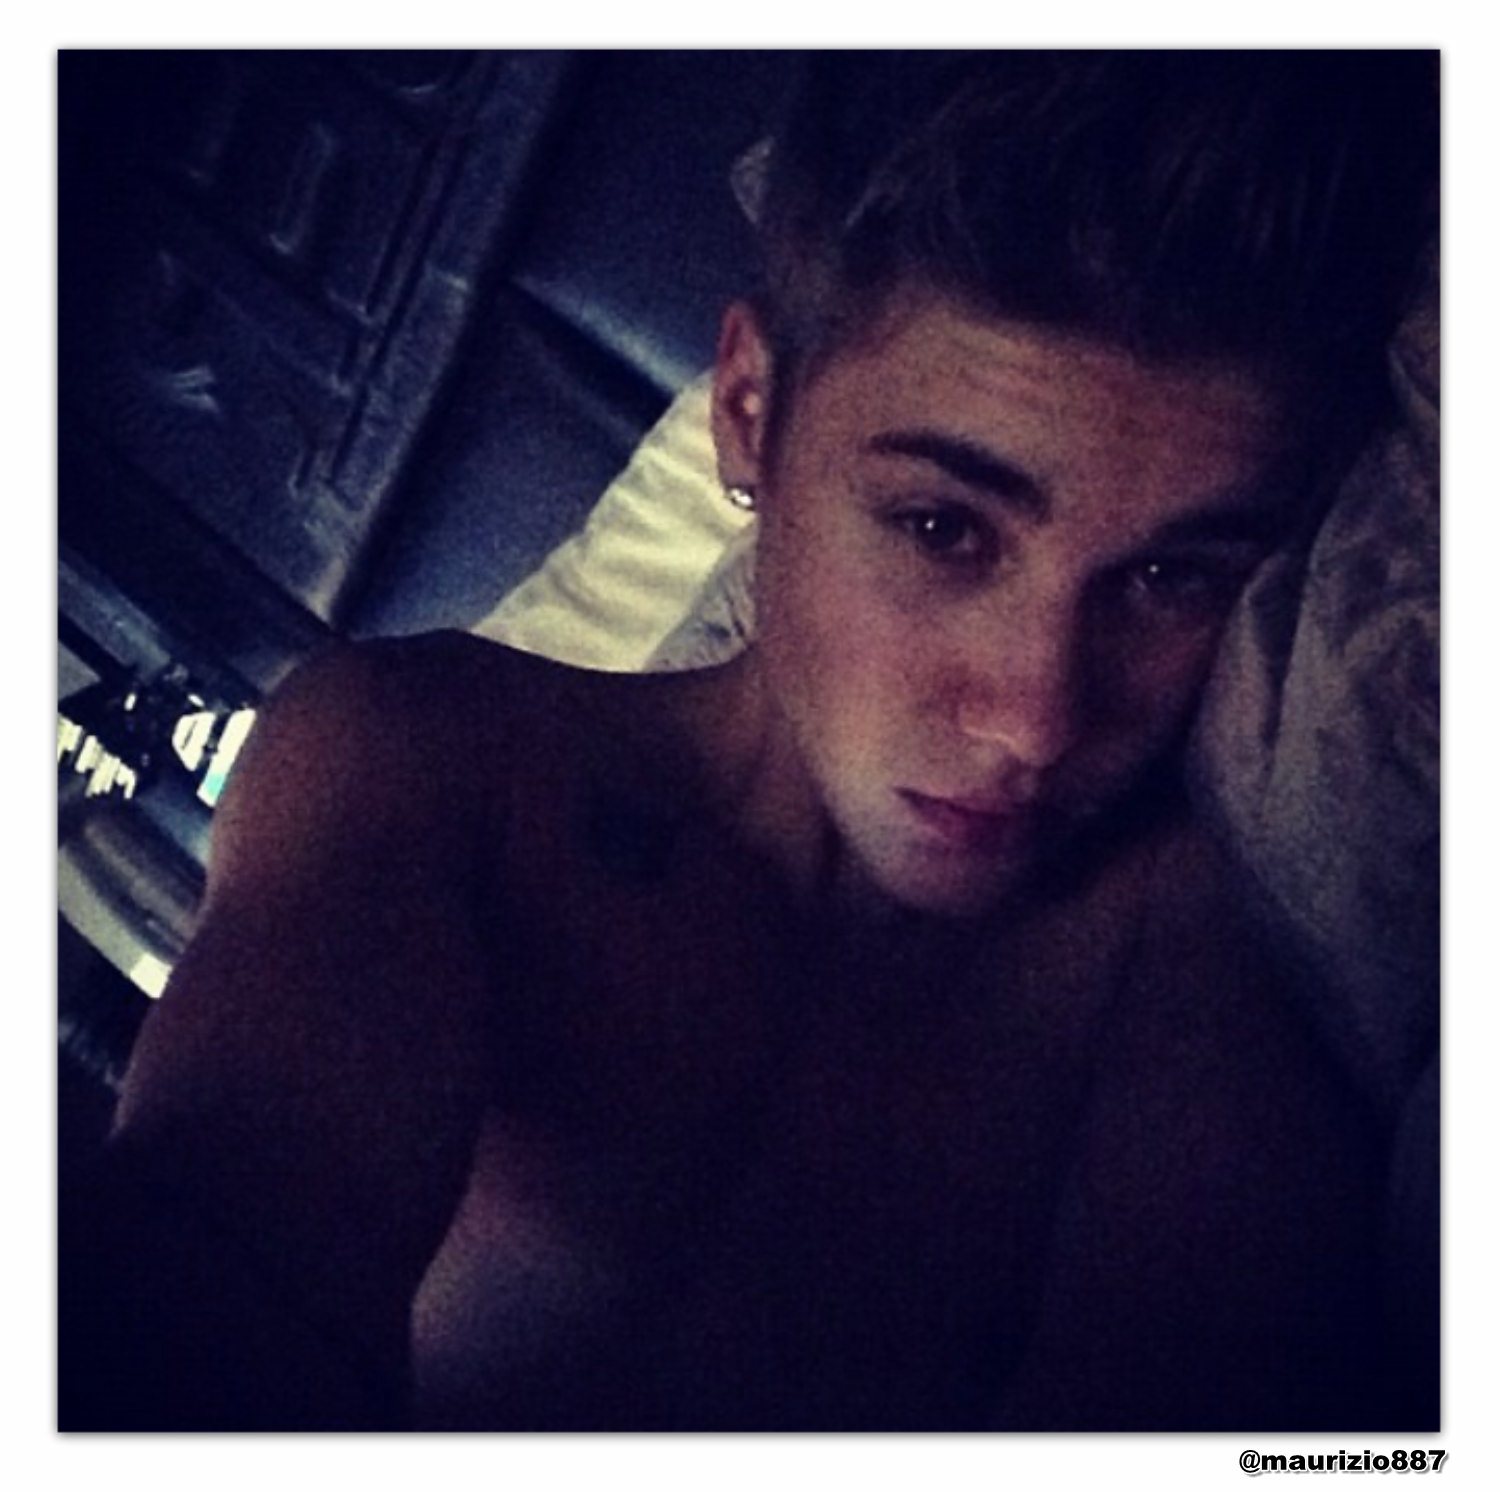 justin bieber,instagram 2012 - Justin Bieber Photo (32333048) - Fanpop